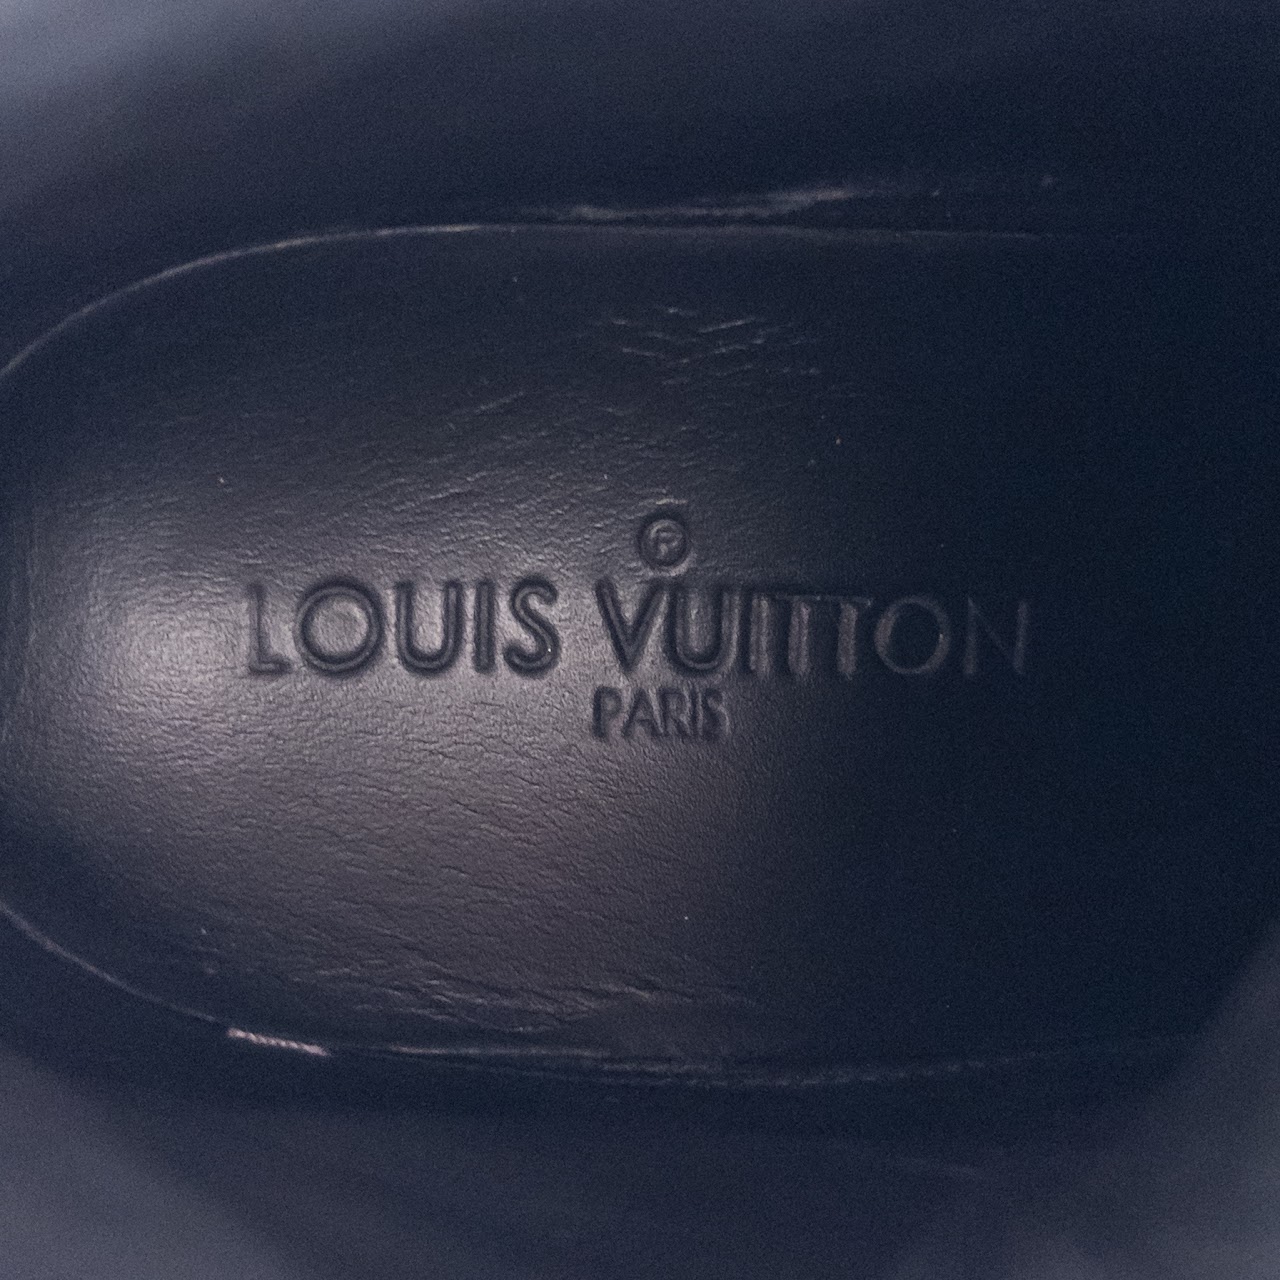 Louis Vuitton Monogram Women's High Top Sneakers